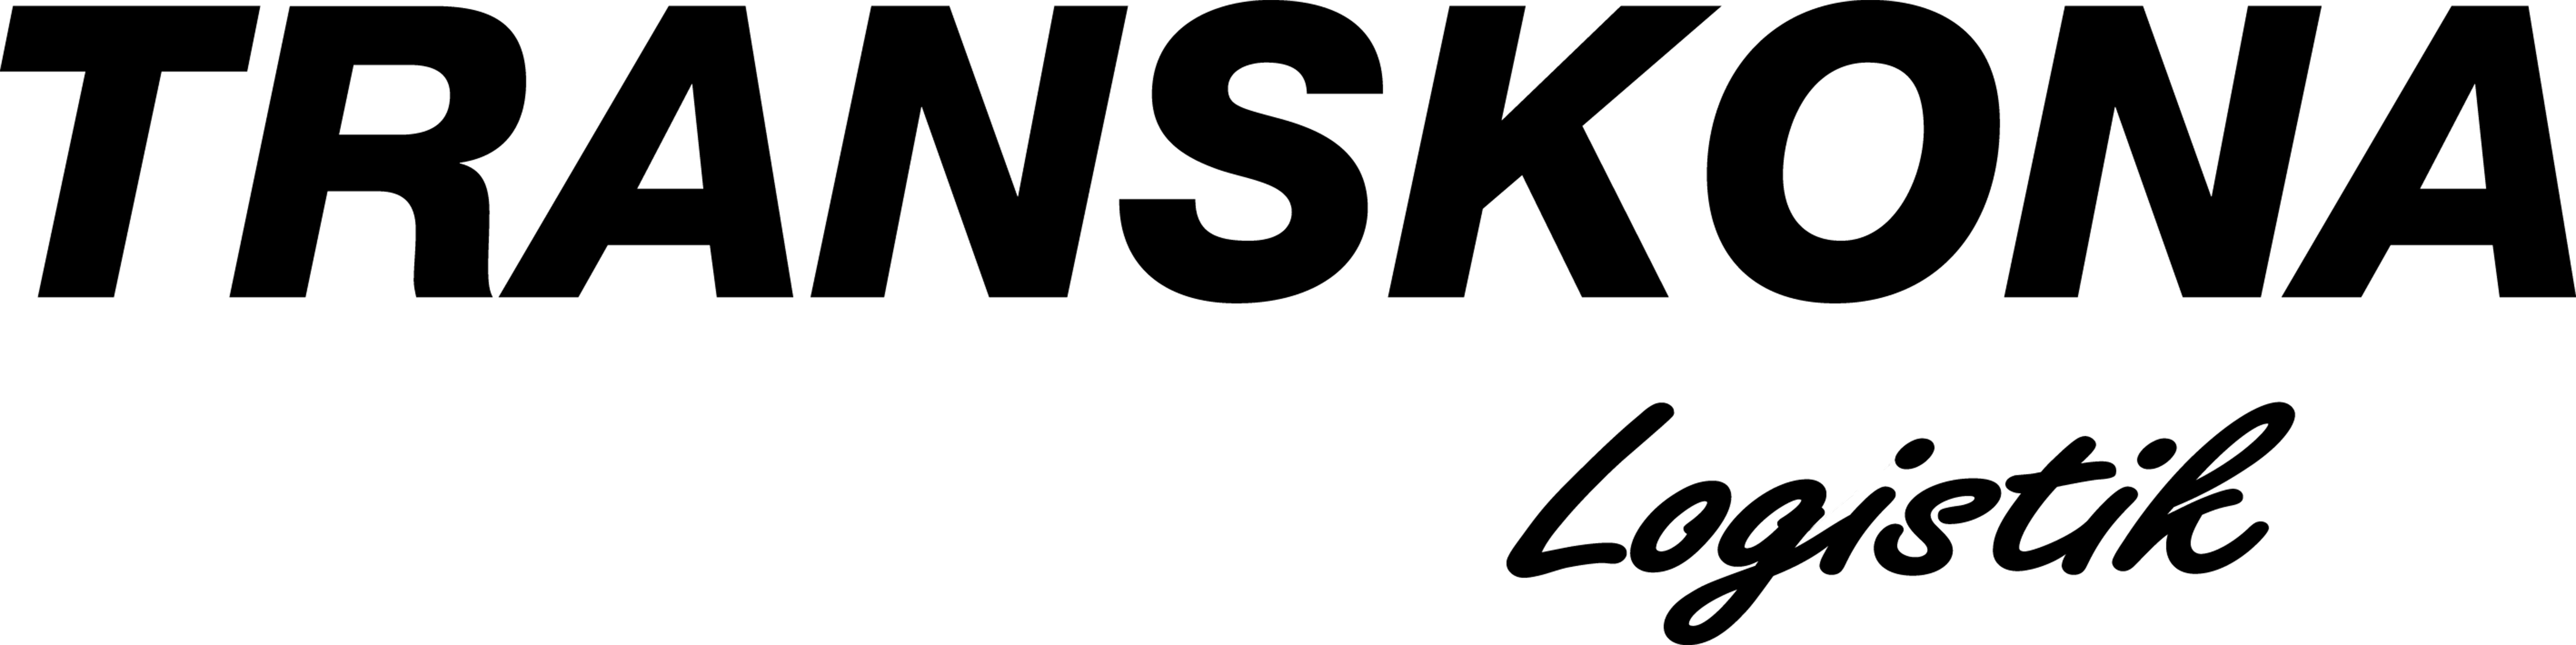 TRANSKONA Logo